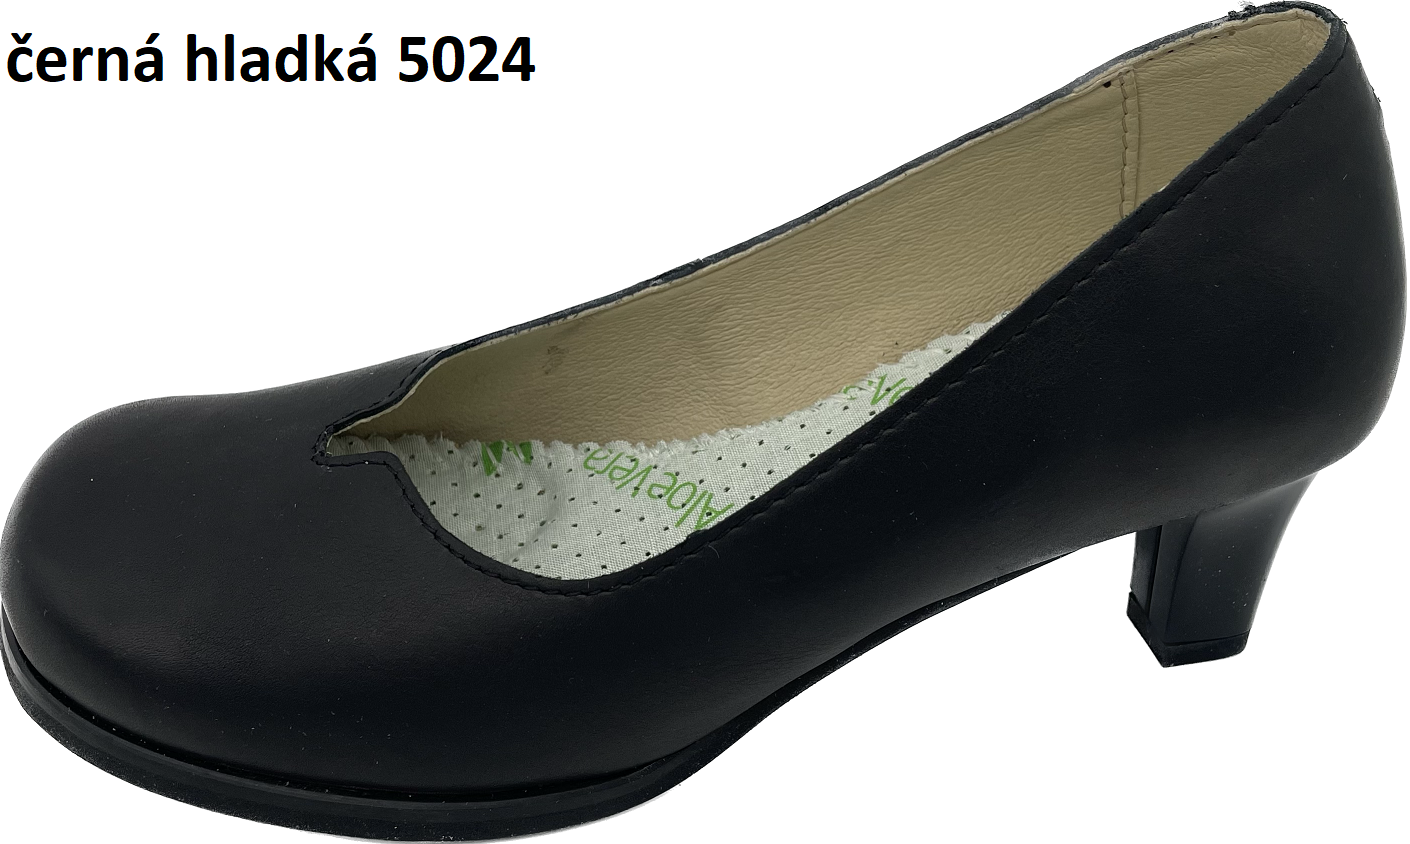 Boty Hanák lodičky Dana 5024 - SKLADEM Barva usně: černá hladká, Velikosti obuvi: 36